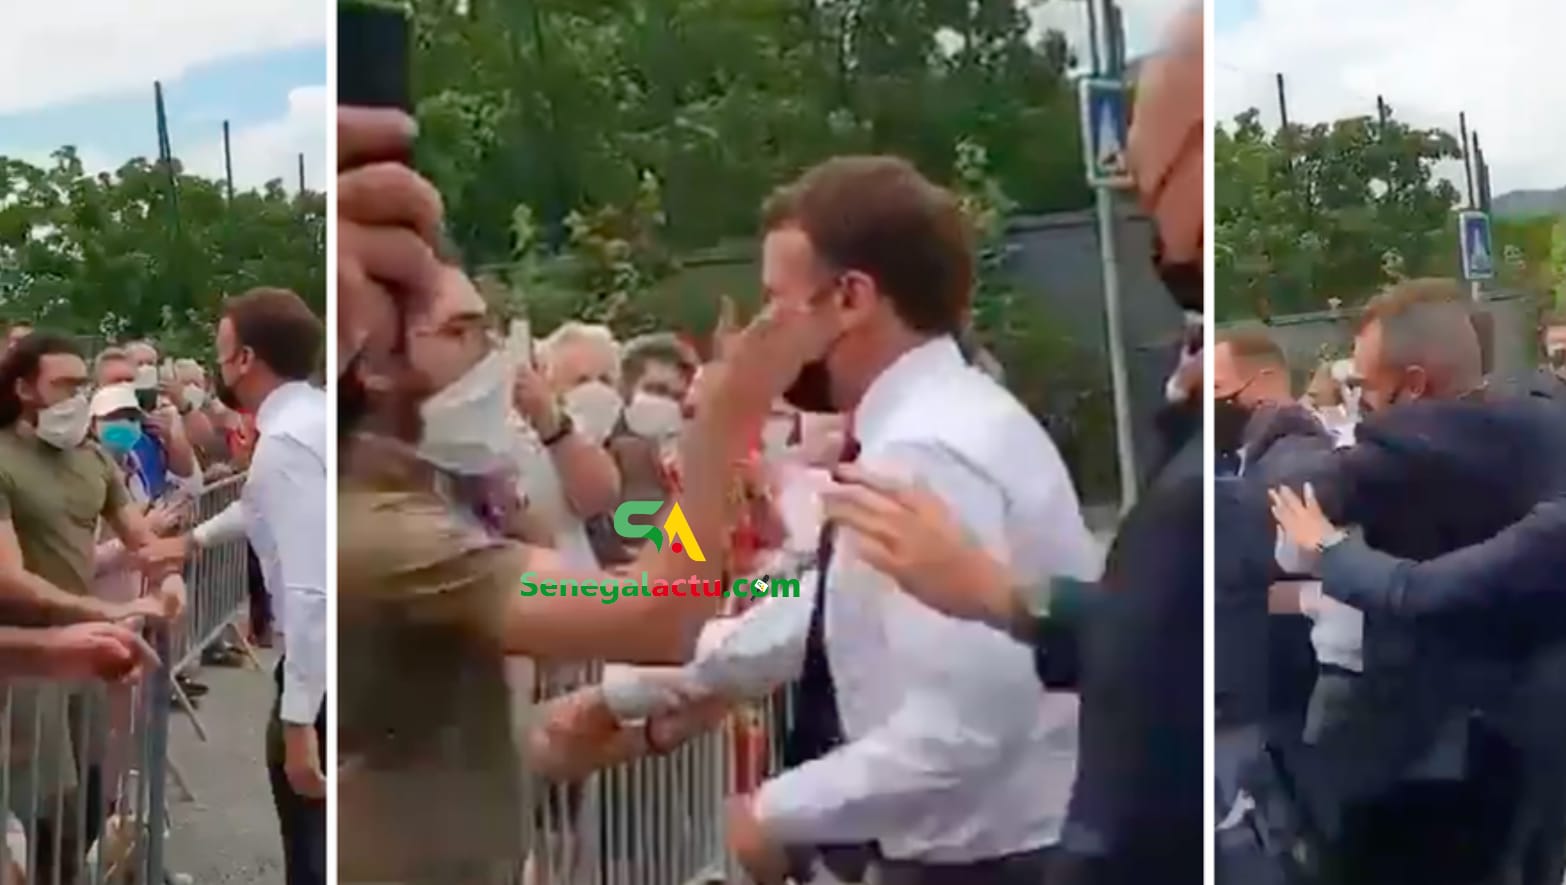 Emmanuel Macron GIFLÉ lors d’un déplacement dans la Drôme